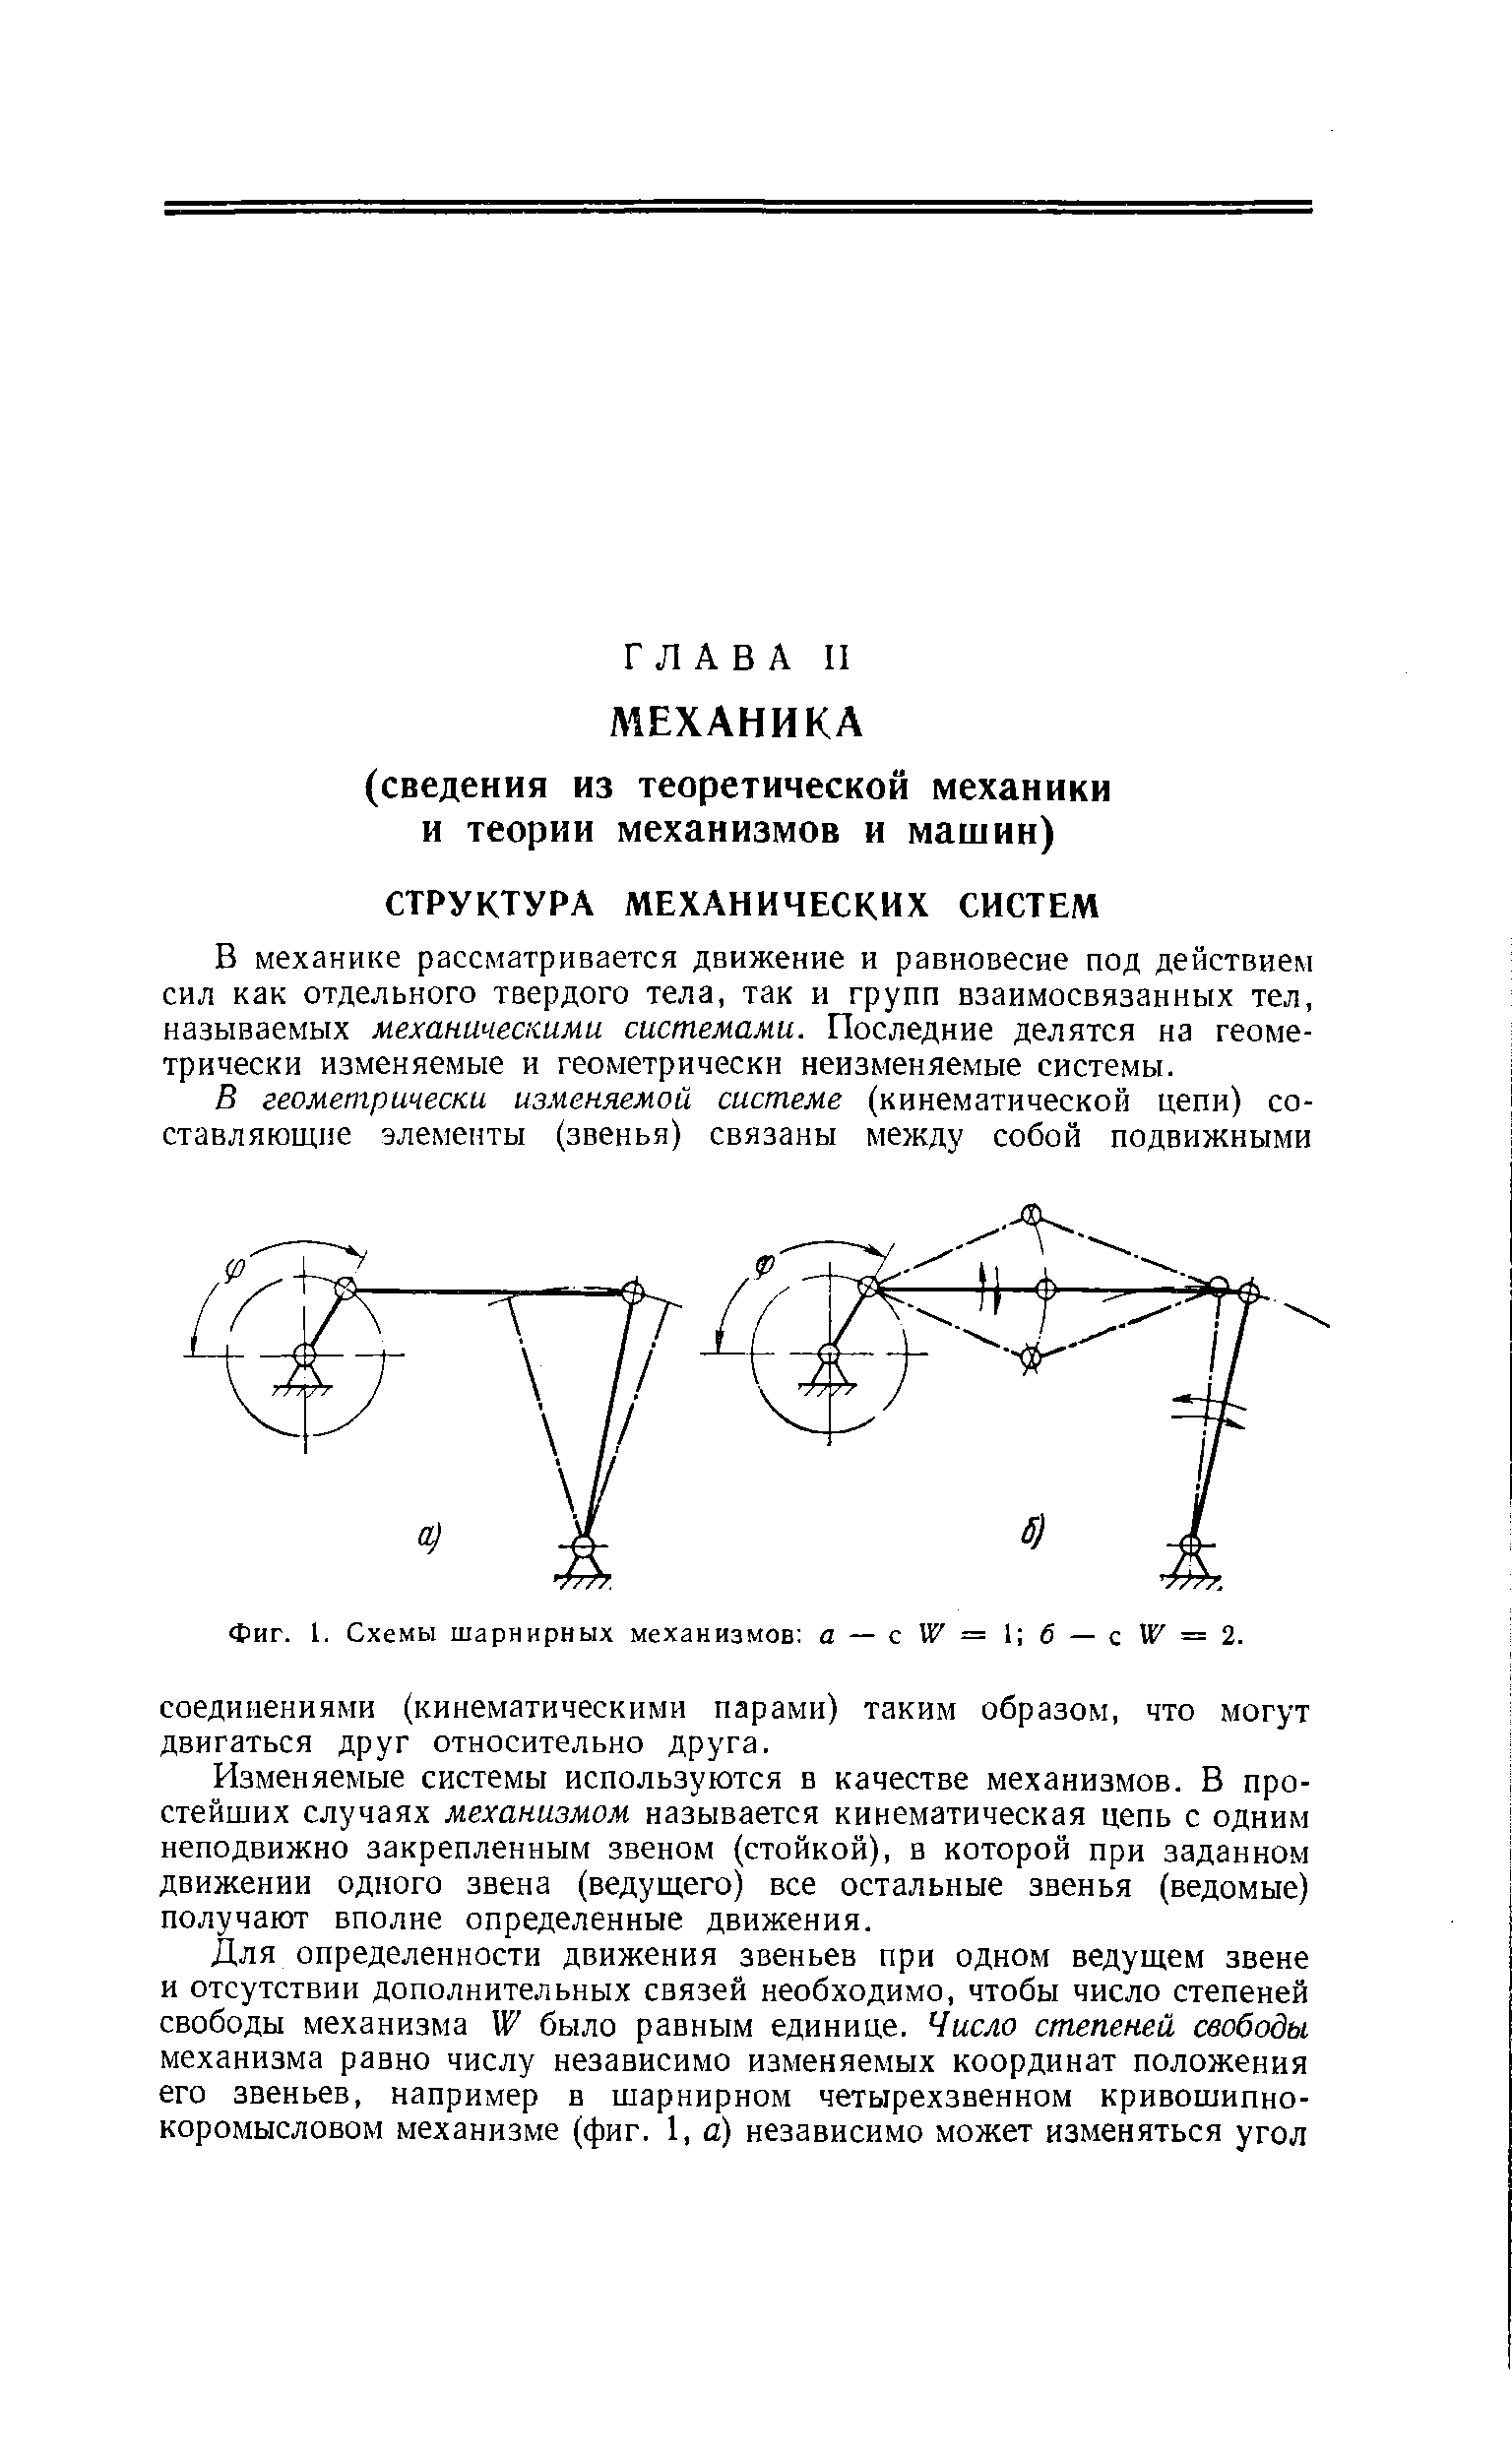 Фиг. 1. Схемы шарнирных механизмов а — W= б — z" X = 2.
